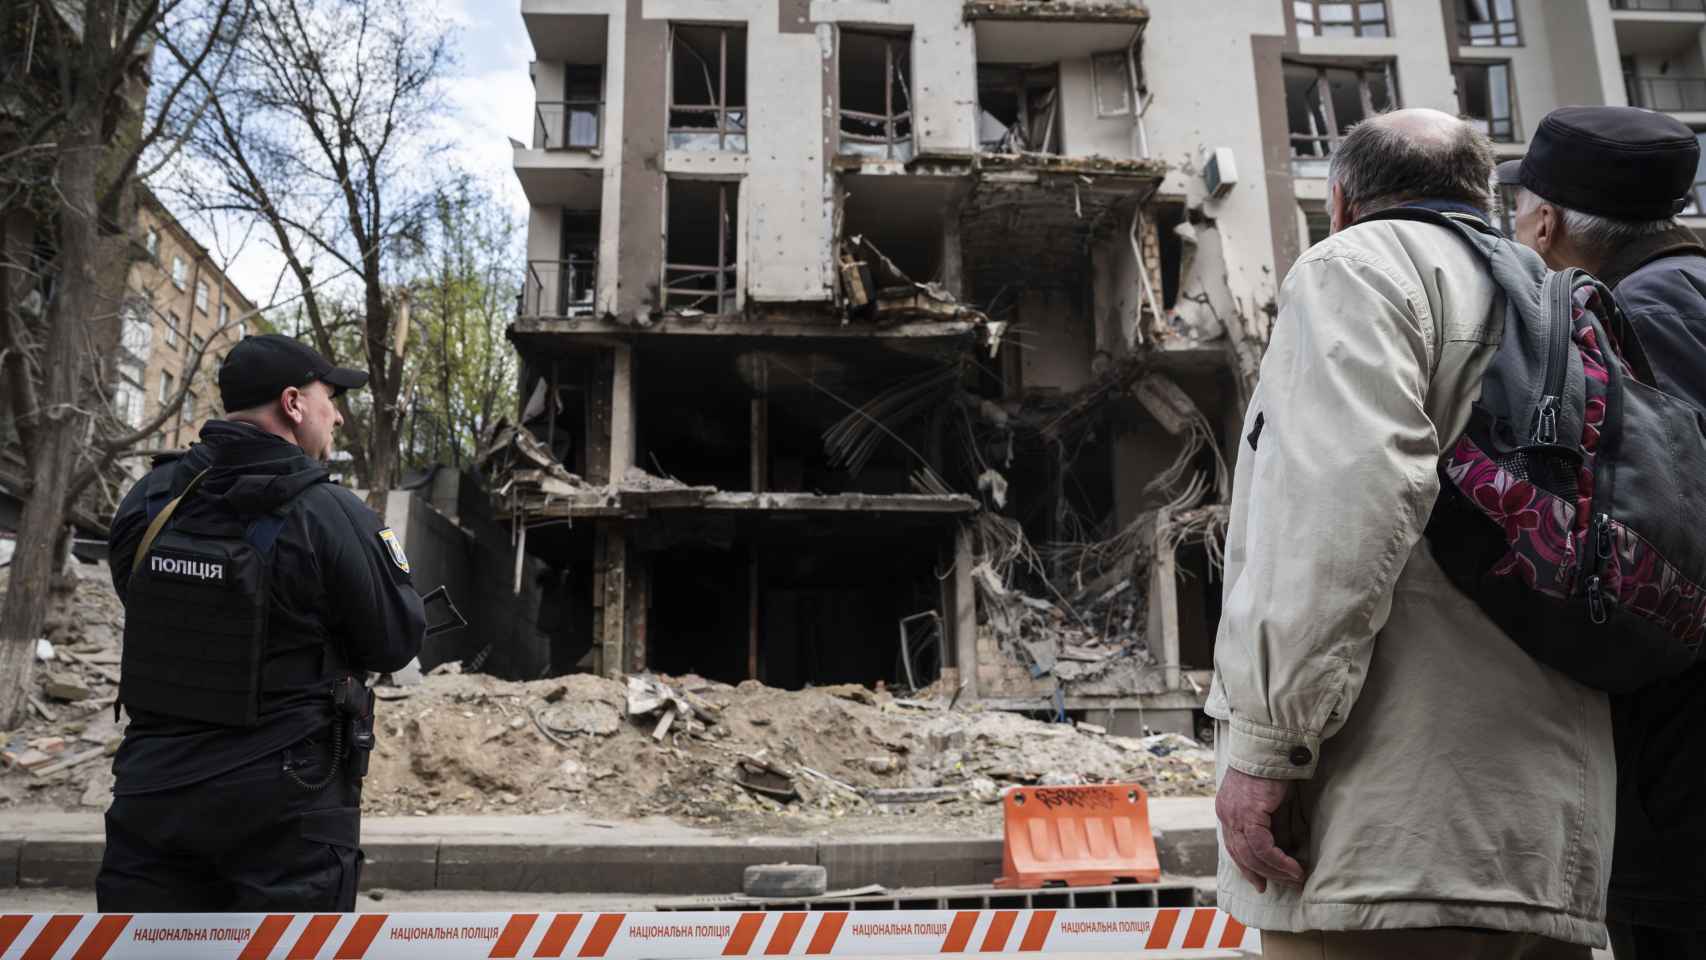 Unas personas inspeccionan los daños en un edificio alcanzado por un misil ruso en el distrito de Schevchenko de Kiev / EP